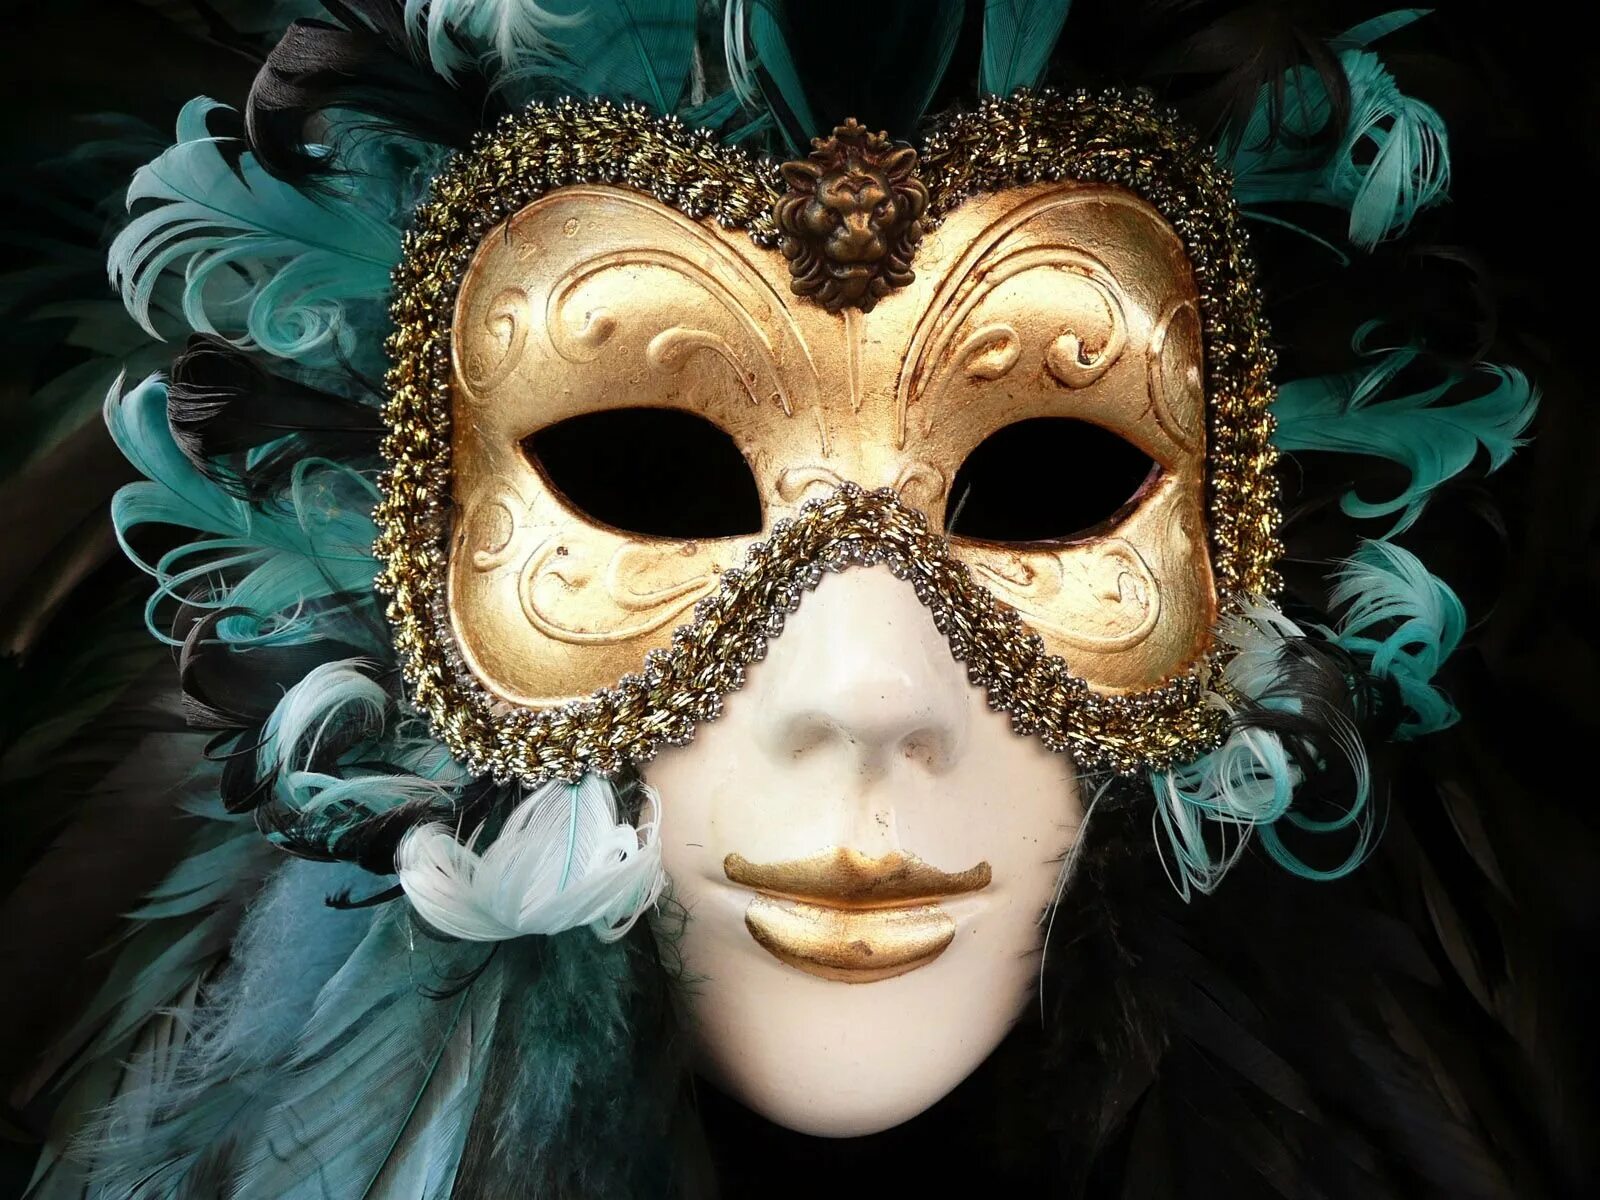 Джузеппе Верди "бал-маскарад". Венецианская маска Вольтер. Венецианская маска Арлекино. Венецианский карнавал Коломбина. Маска лучшее слушать